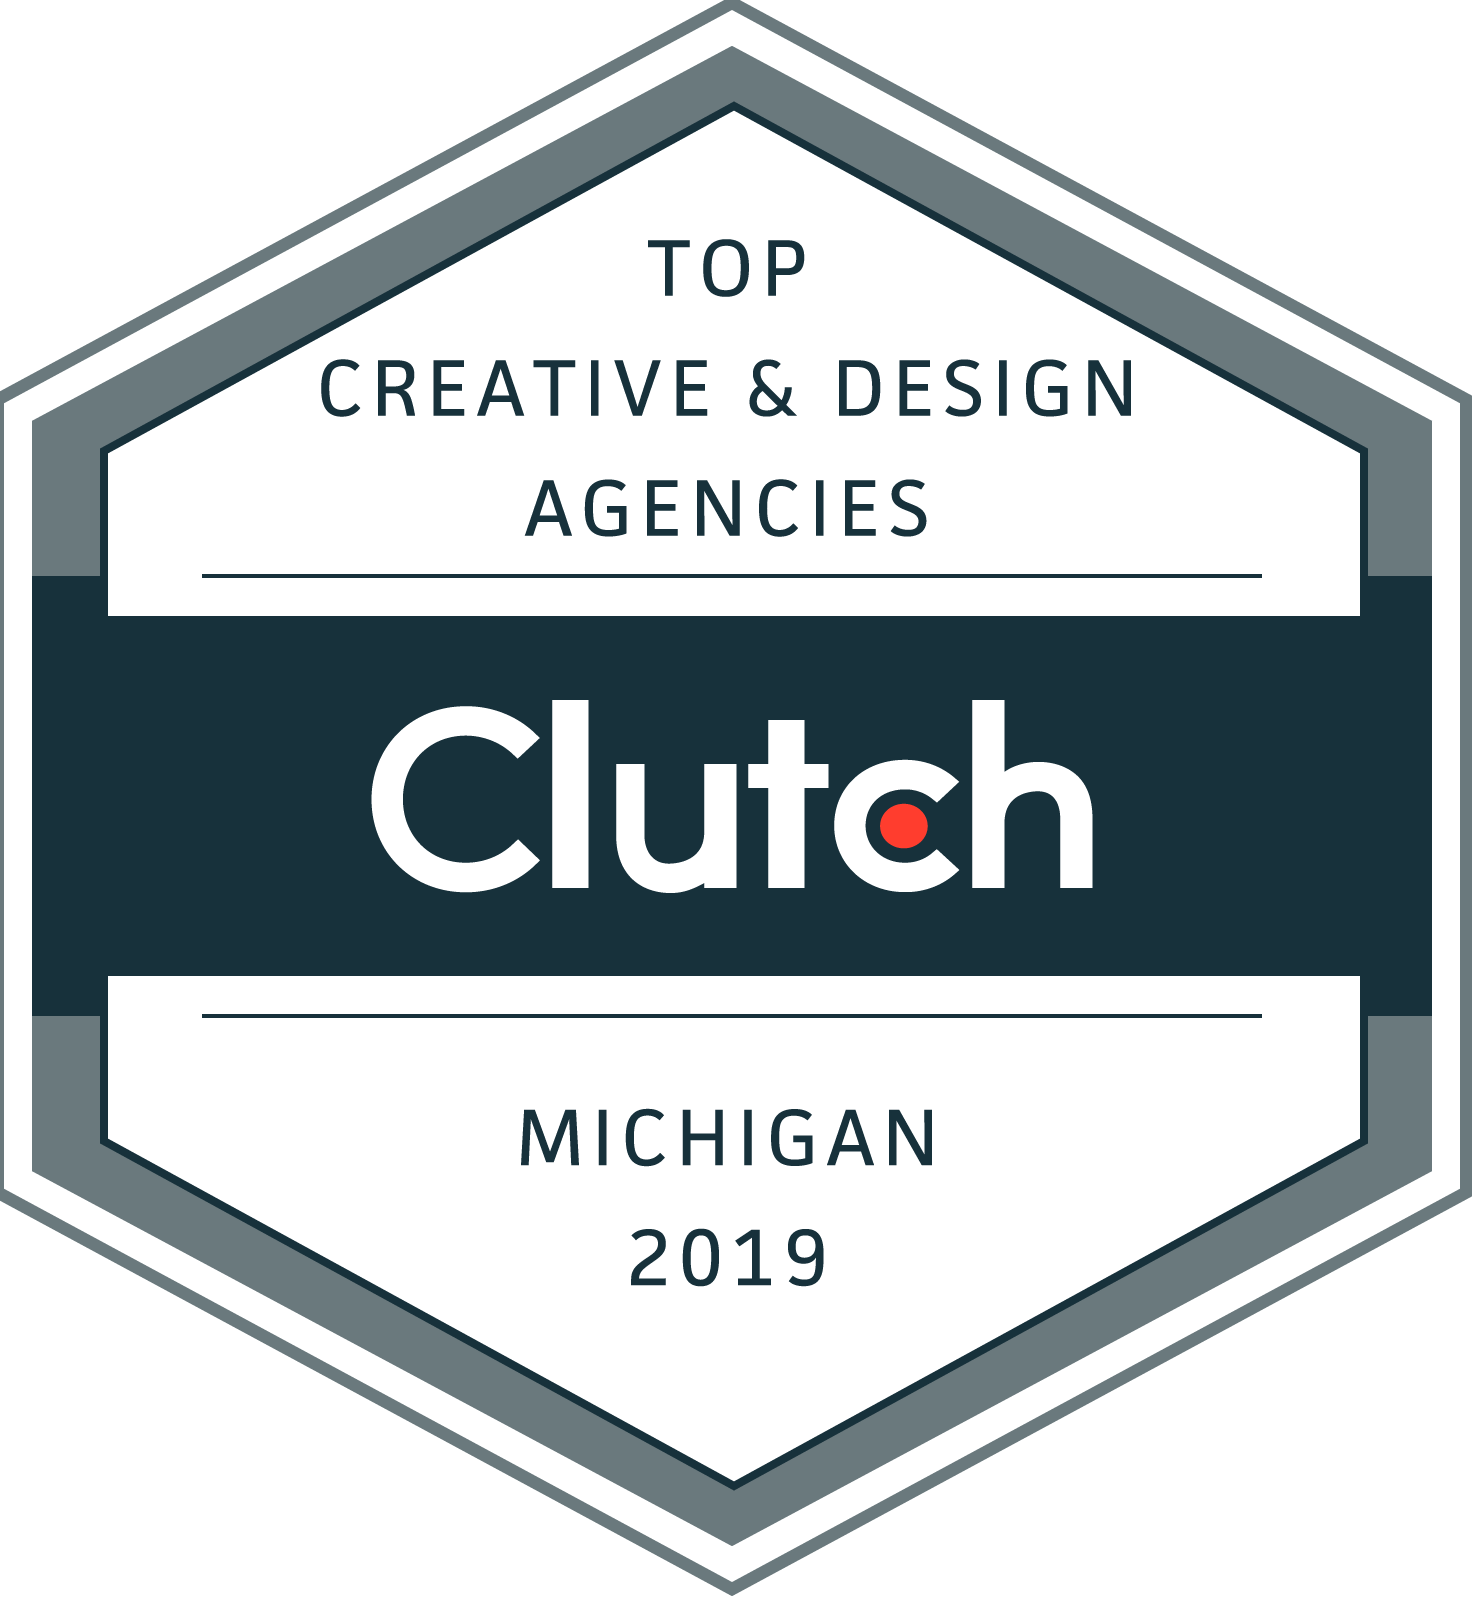 Clutch Top Creative Design Agency in Michigan 2019